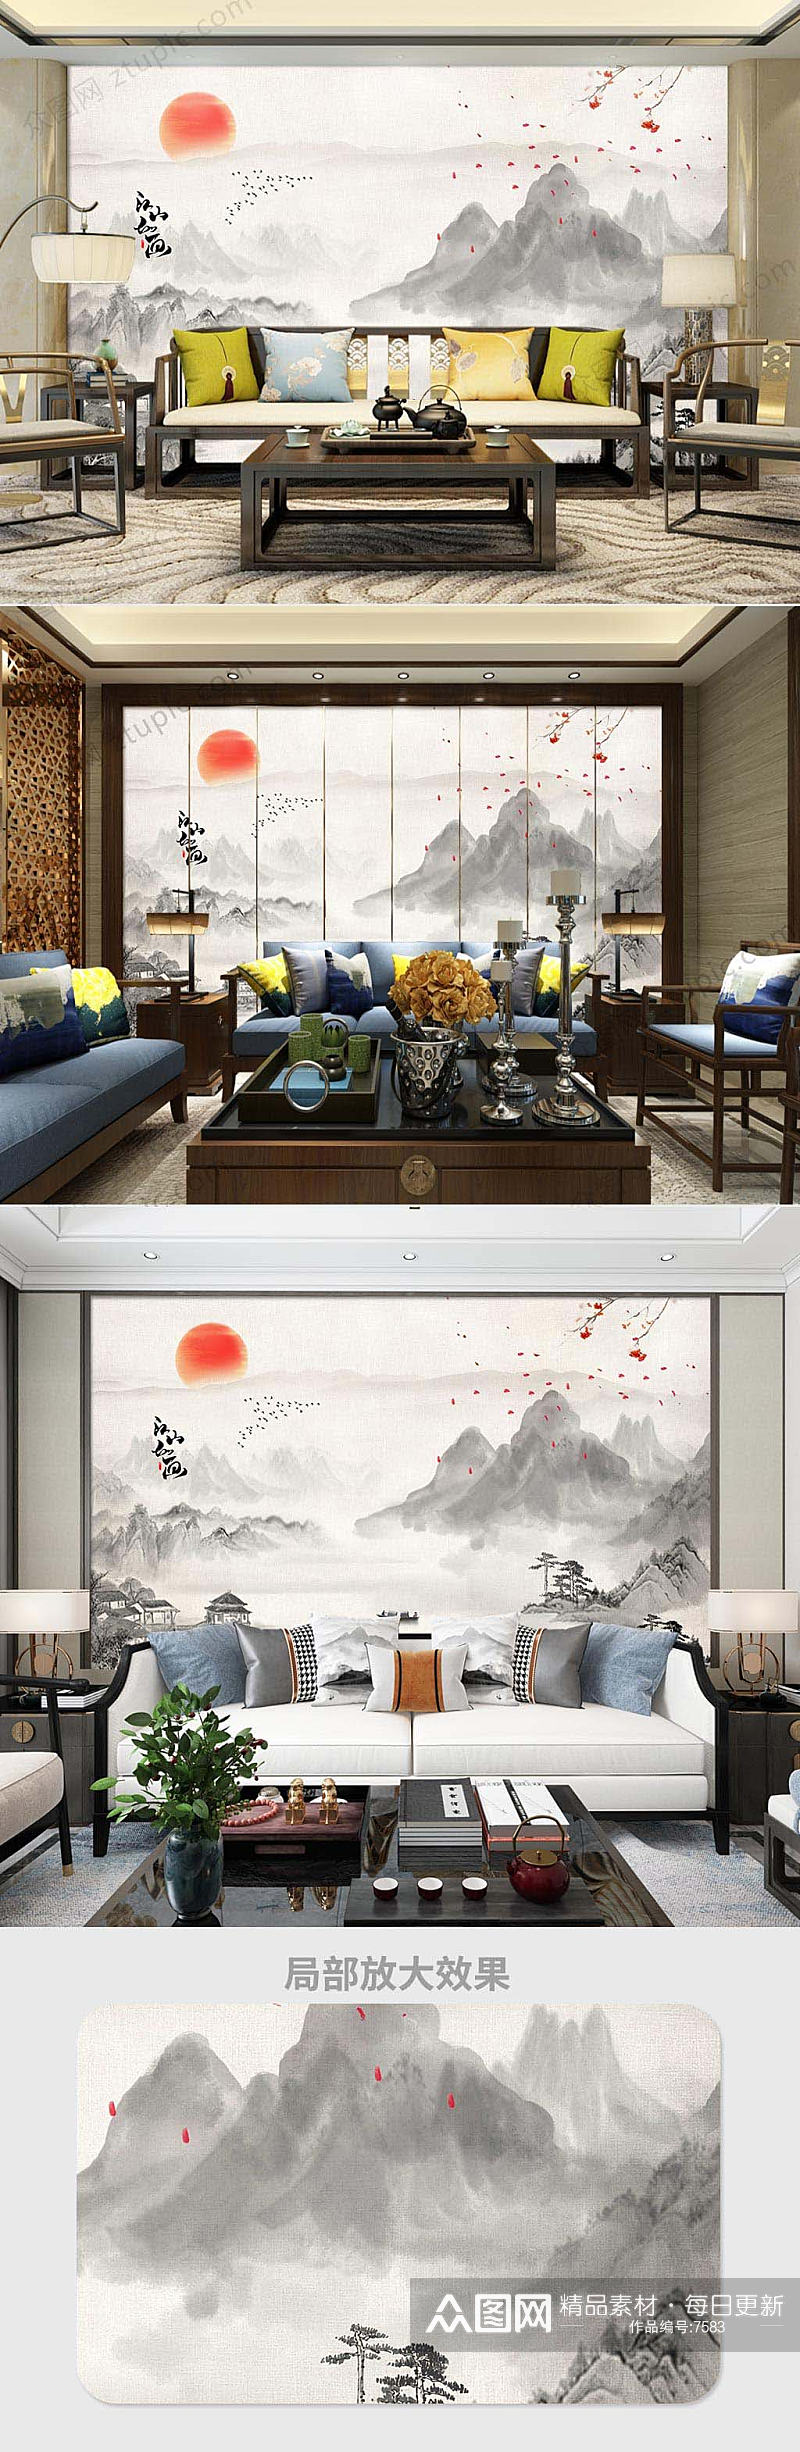 中式意境水墨客厅背景墙素材